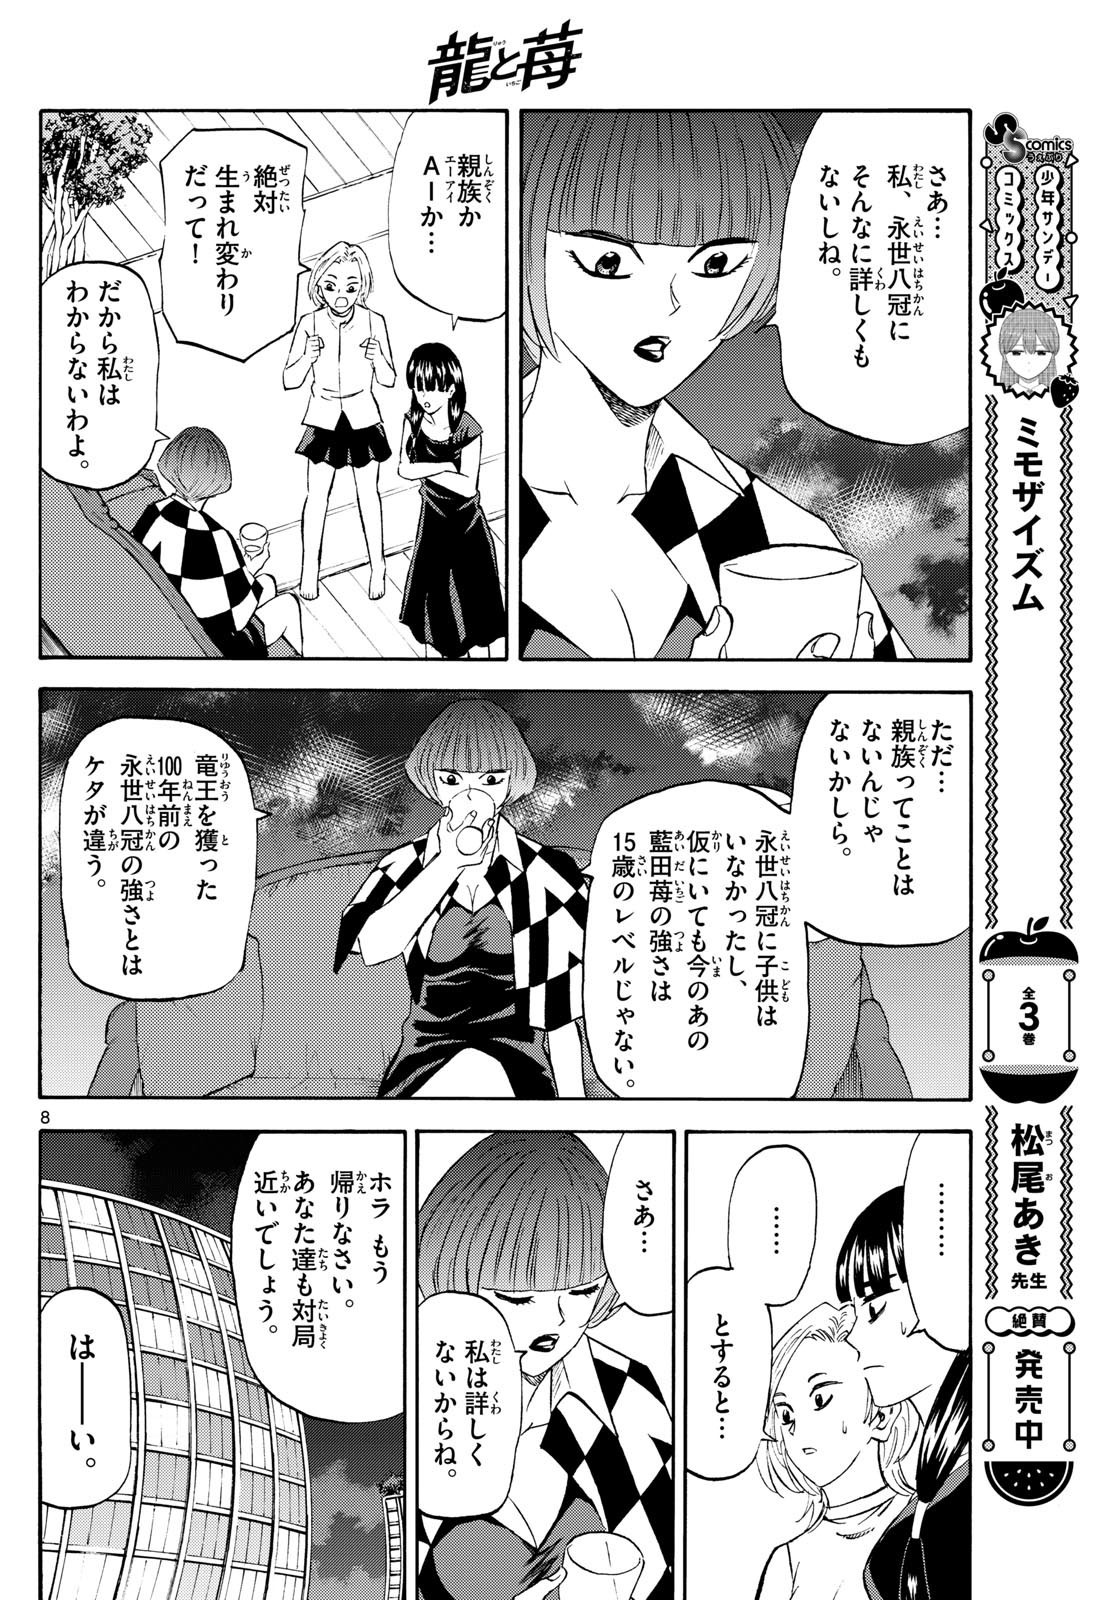 Tatsu to Ichigo - Chapter 199 - Page 8